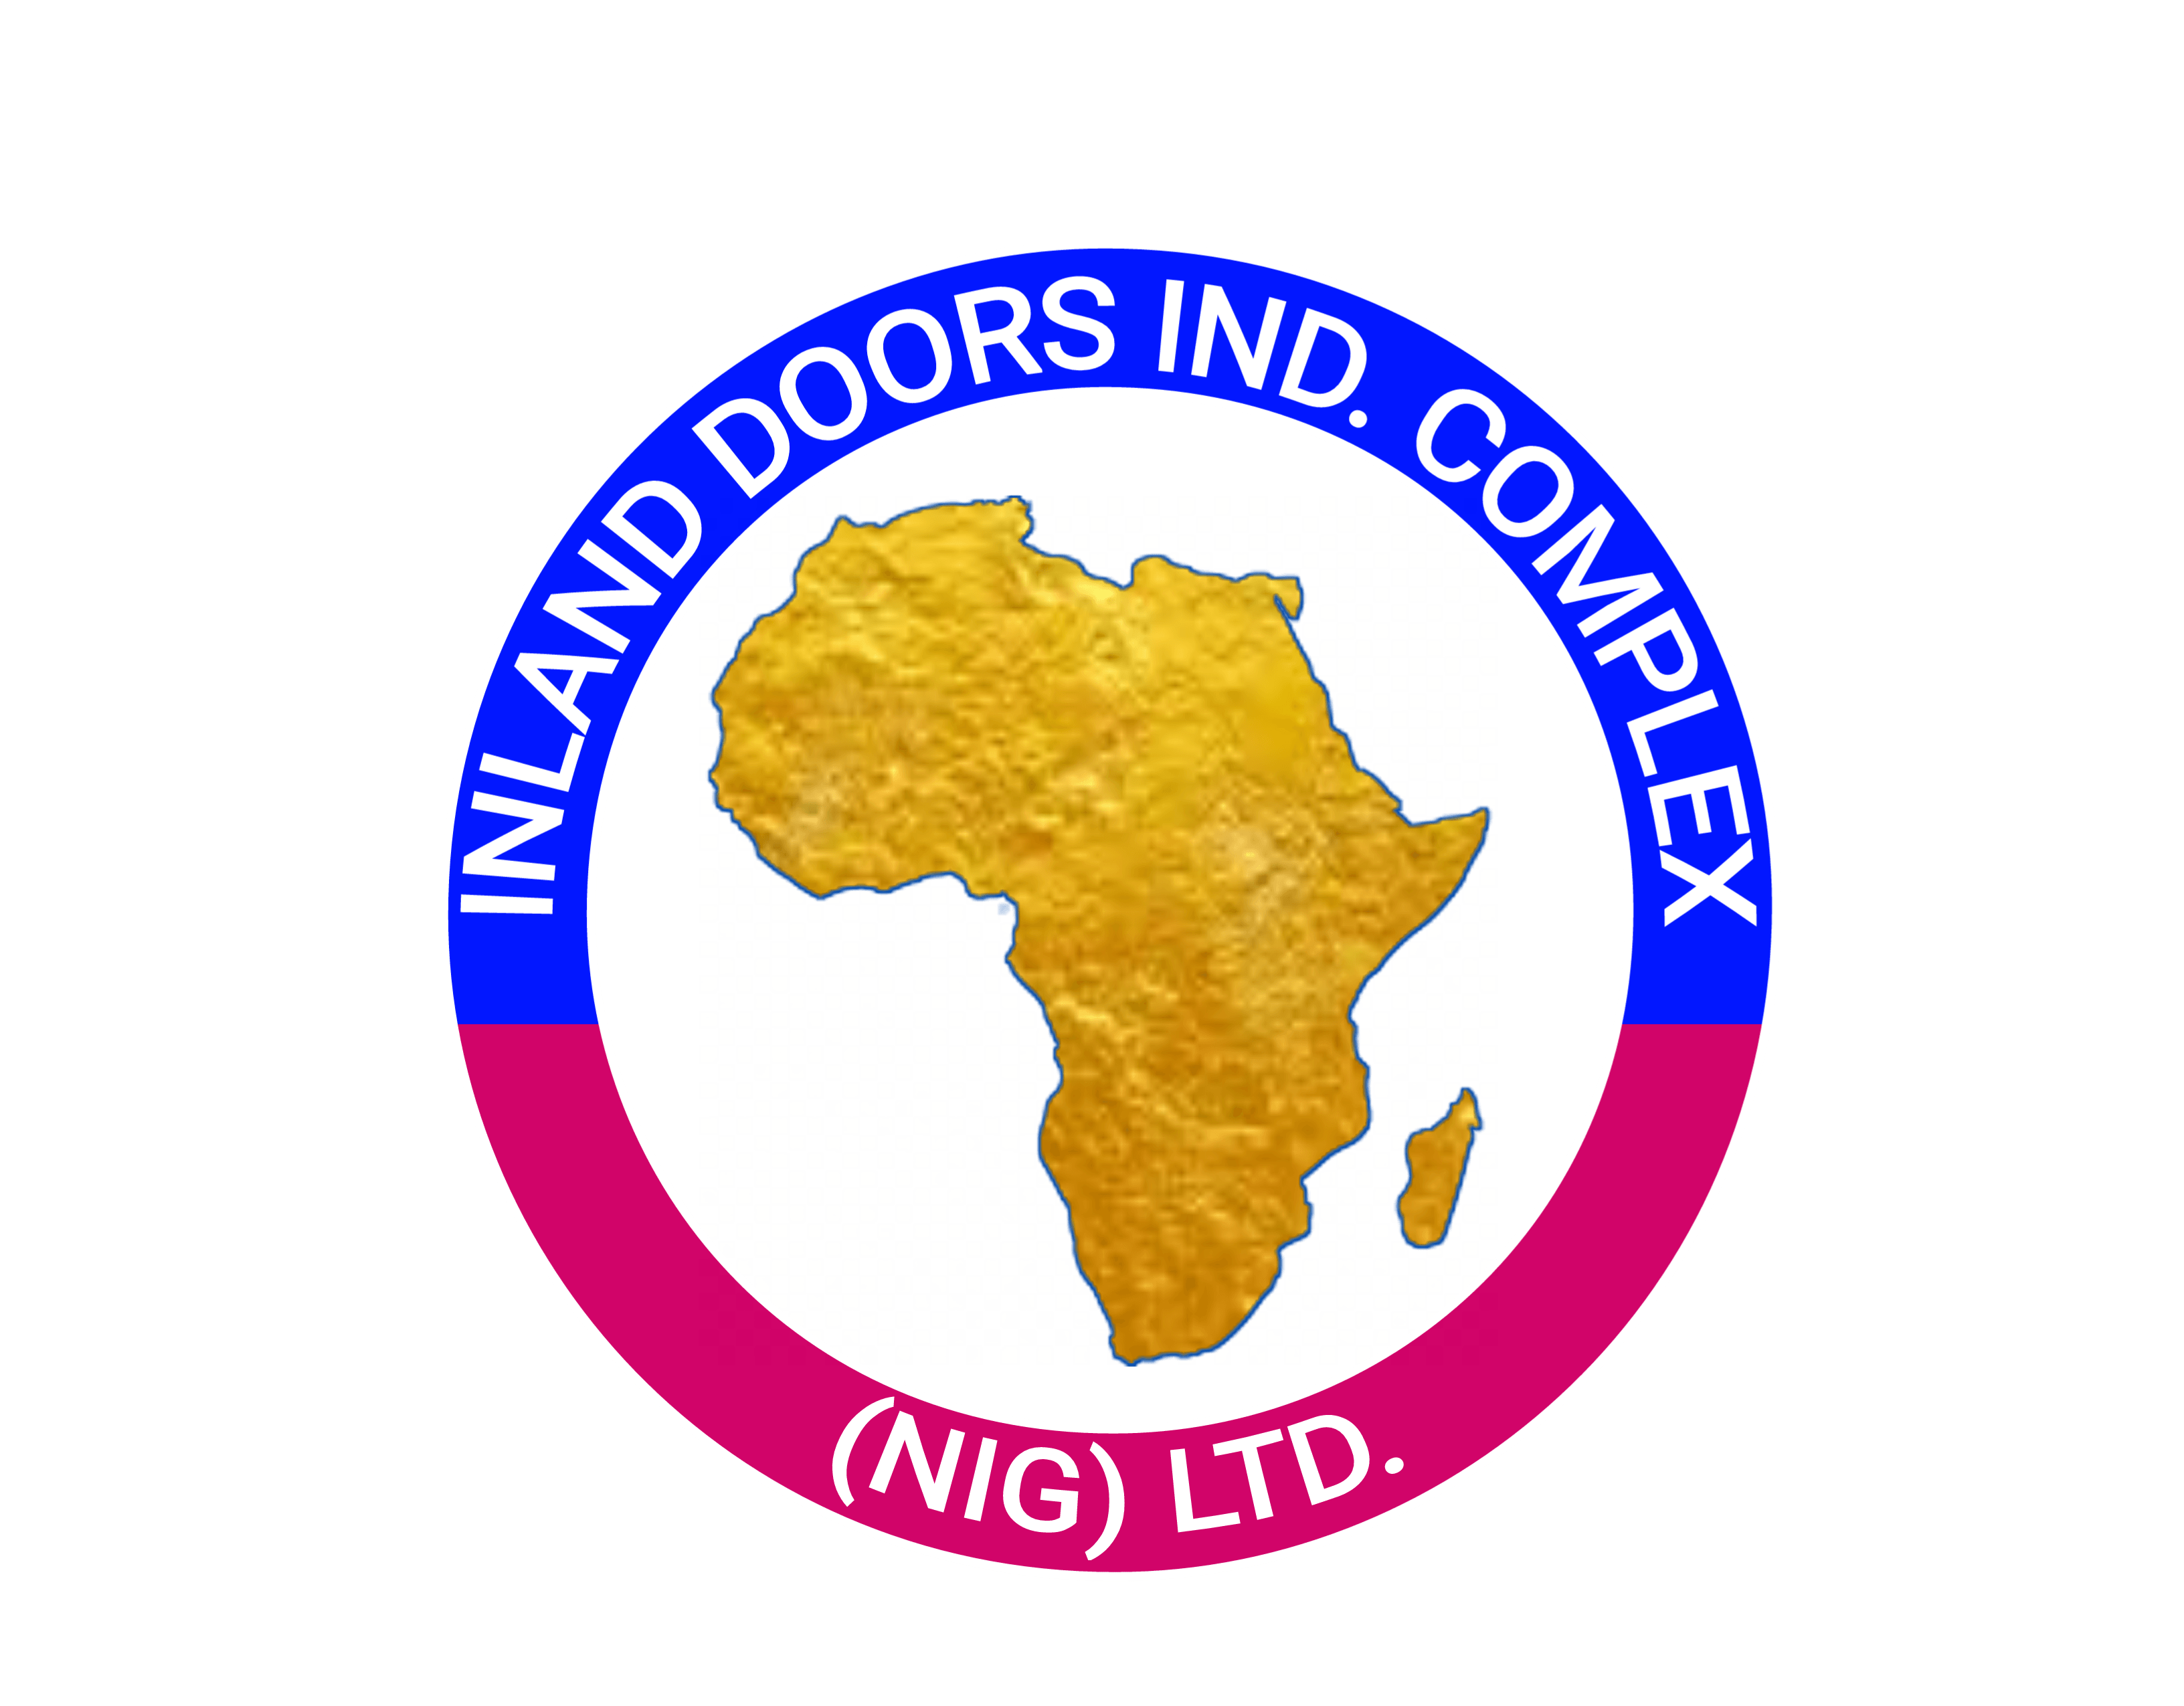 Inland Doors Ltd